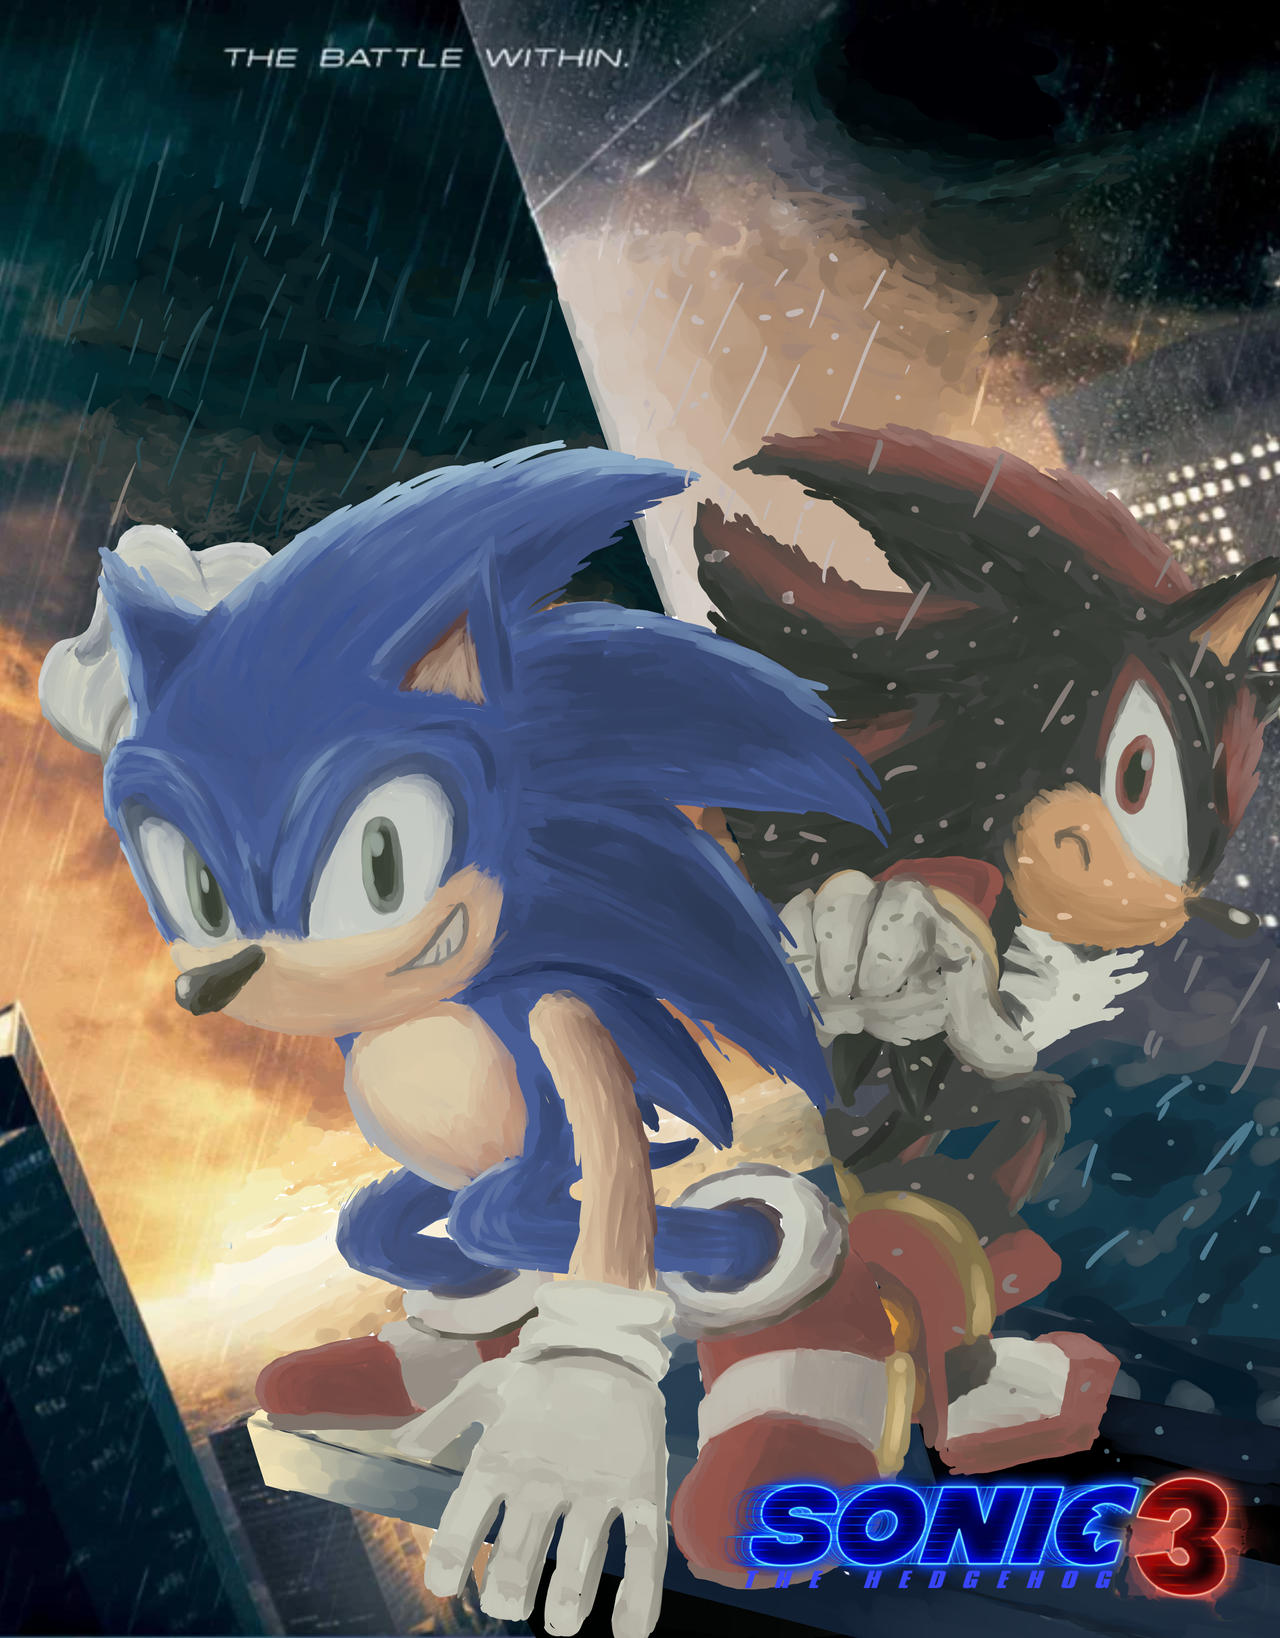 Sonic The Hedgehog 3 by Sonicfan6495 on DeviantArt